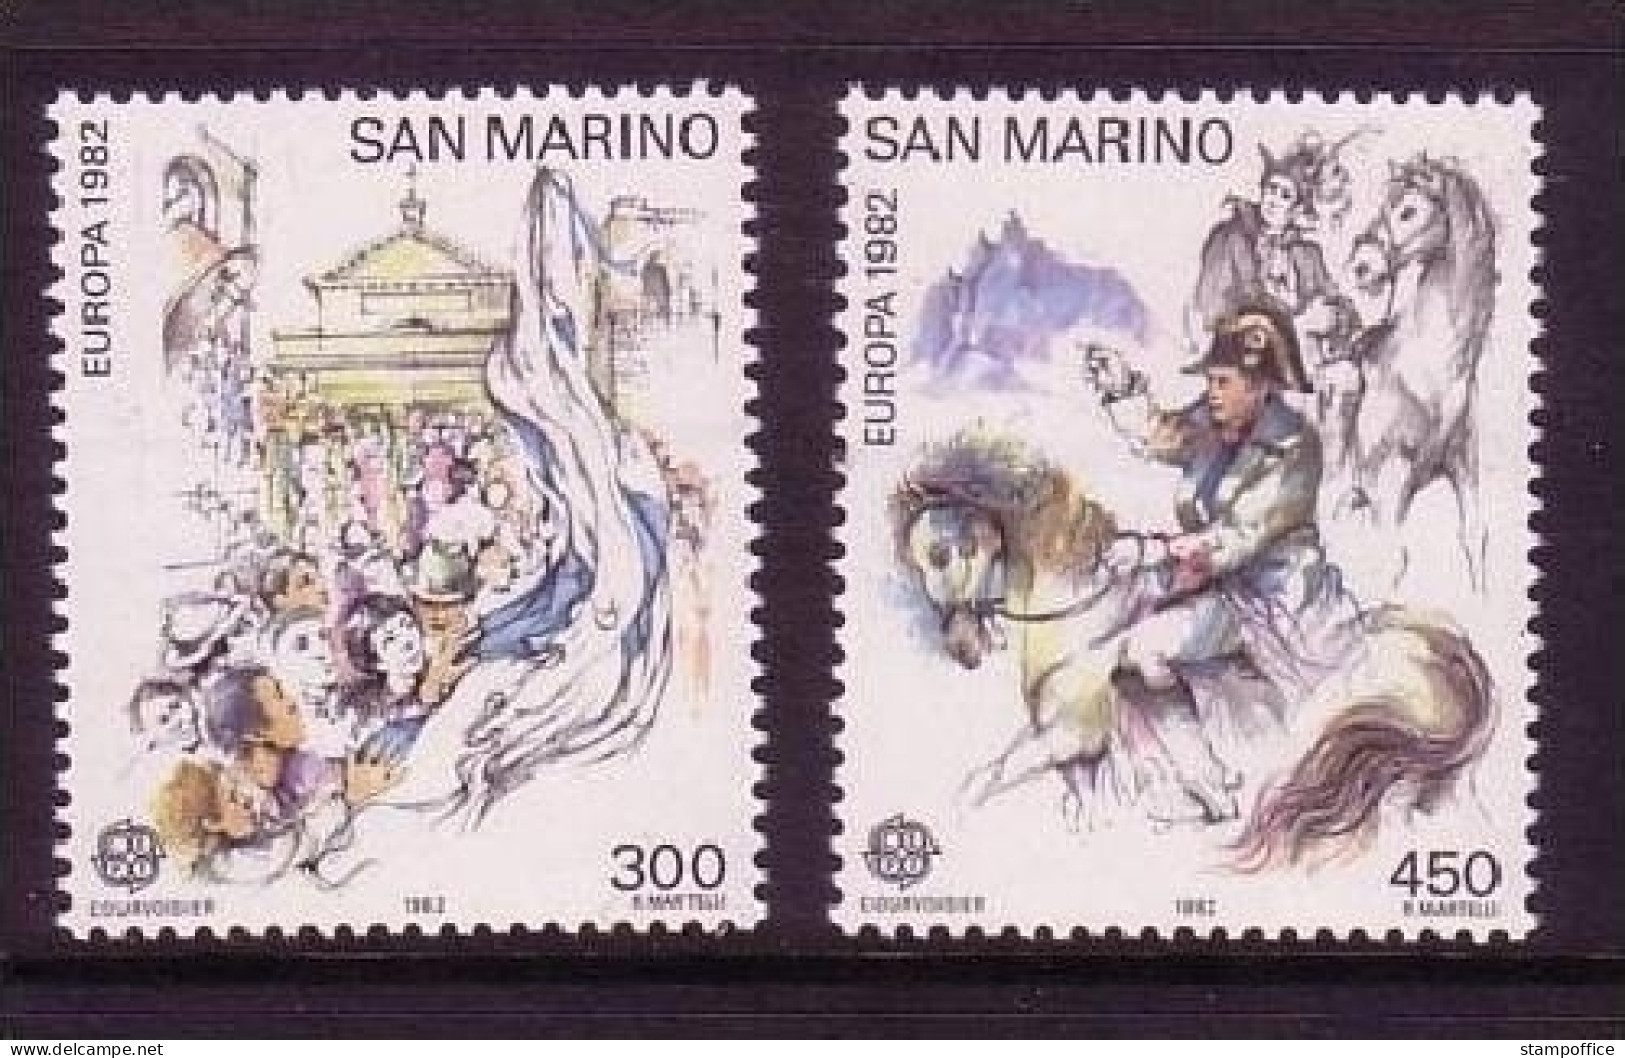 SAN MARINO MI-NR. 1249-1250 POSTFRISCH(MINT) EUROPA 1982 - HISTORISCHE EREIGNISSE NAPOLEON AUF PFERD - 1982